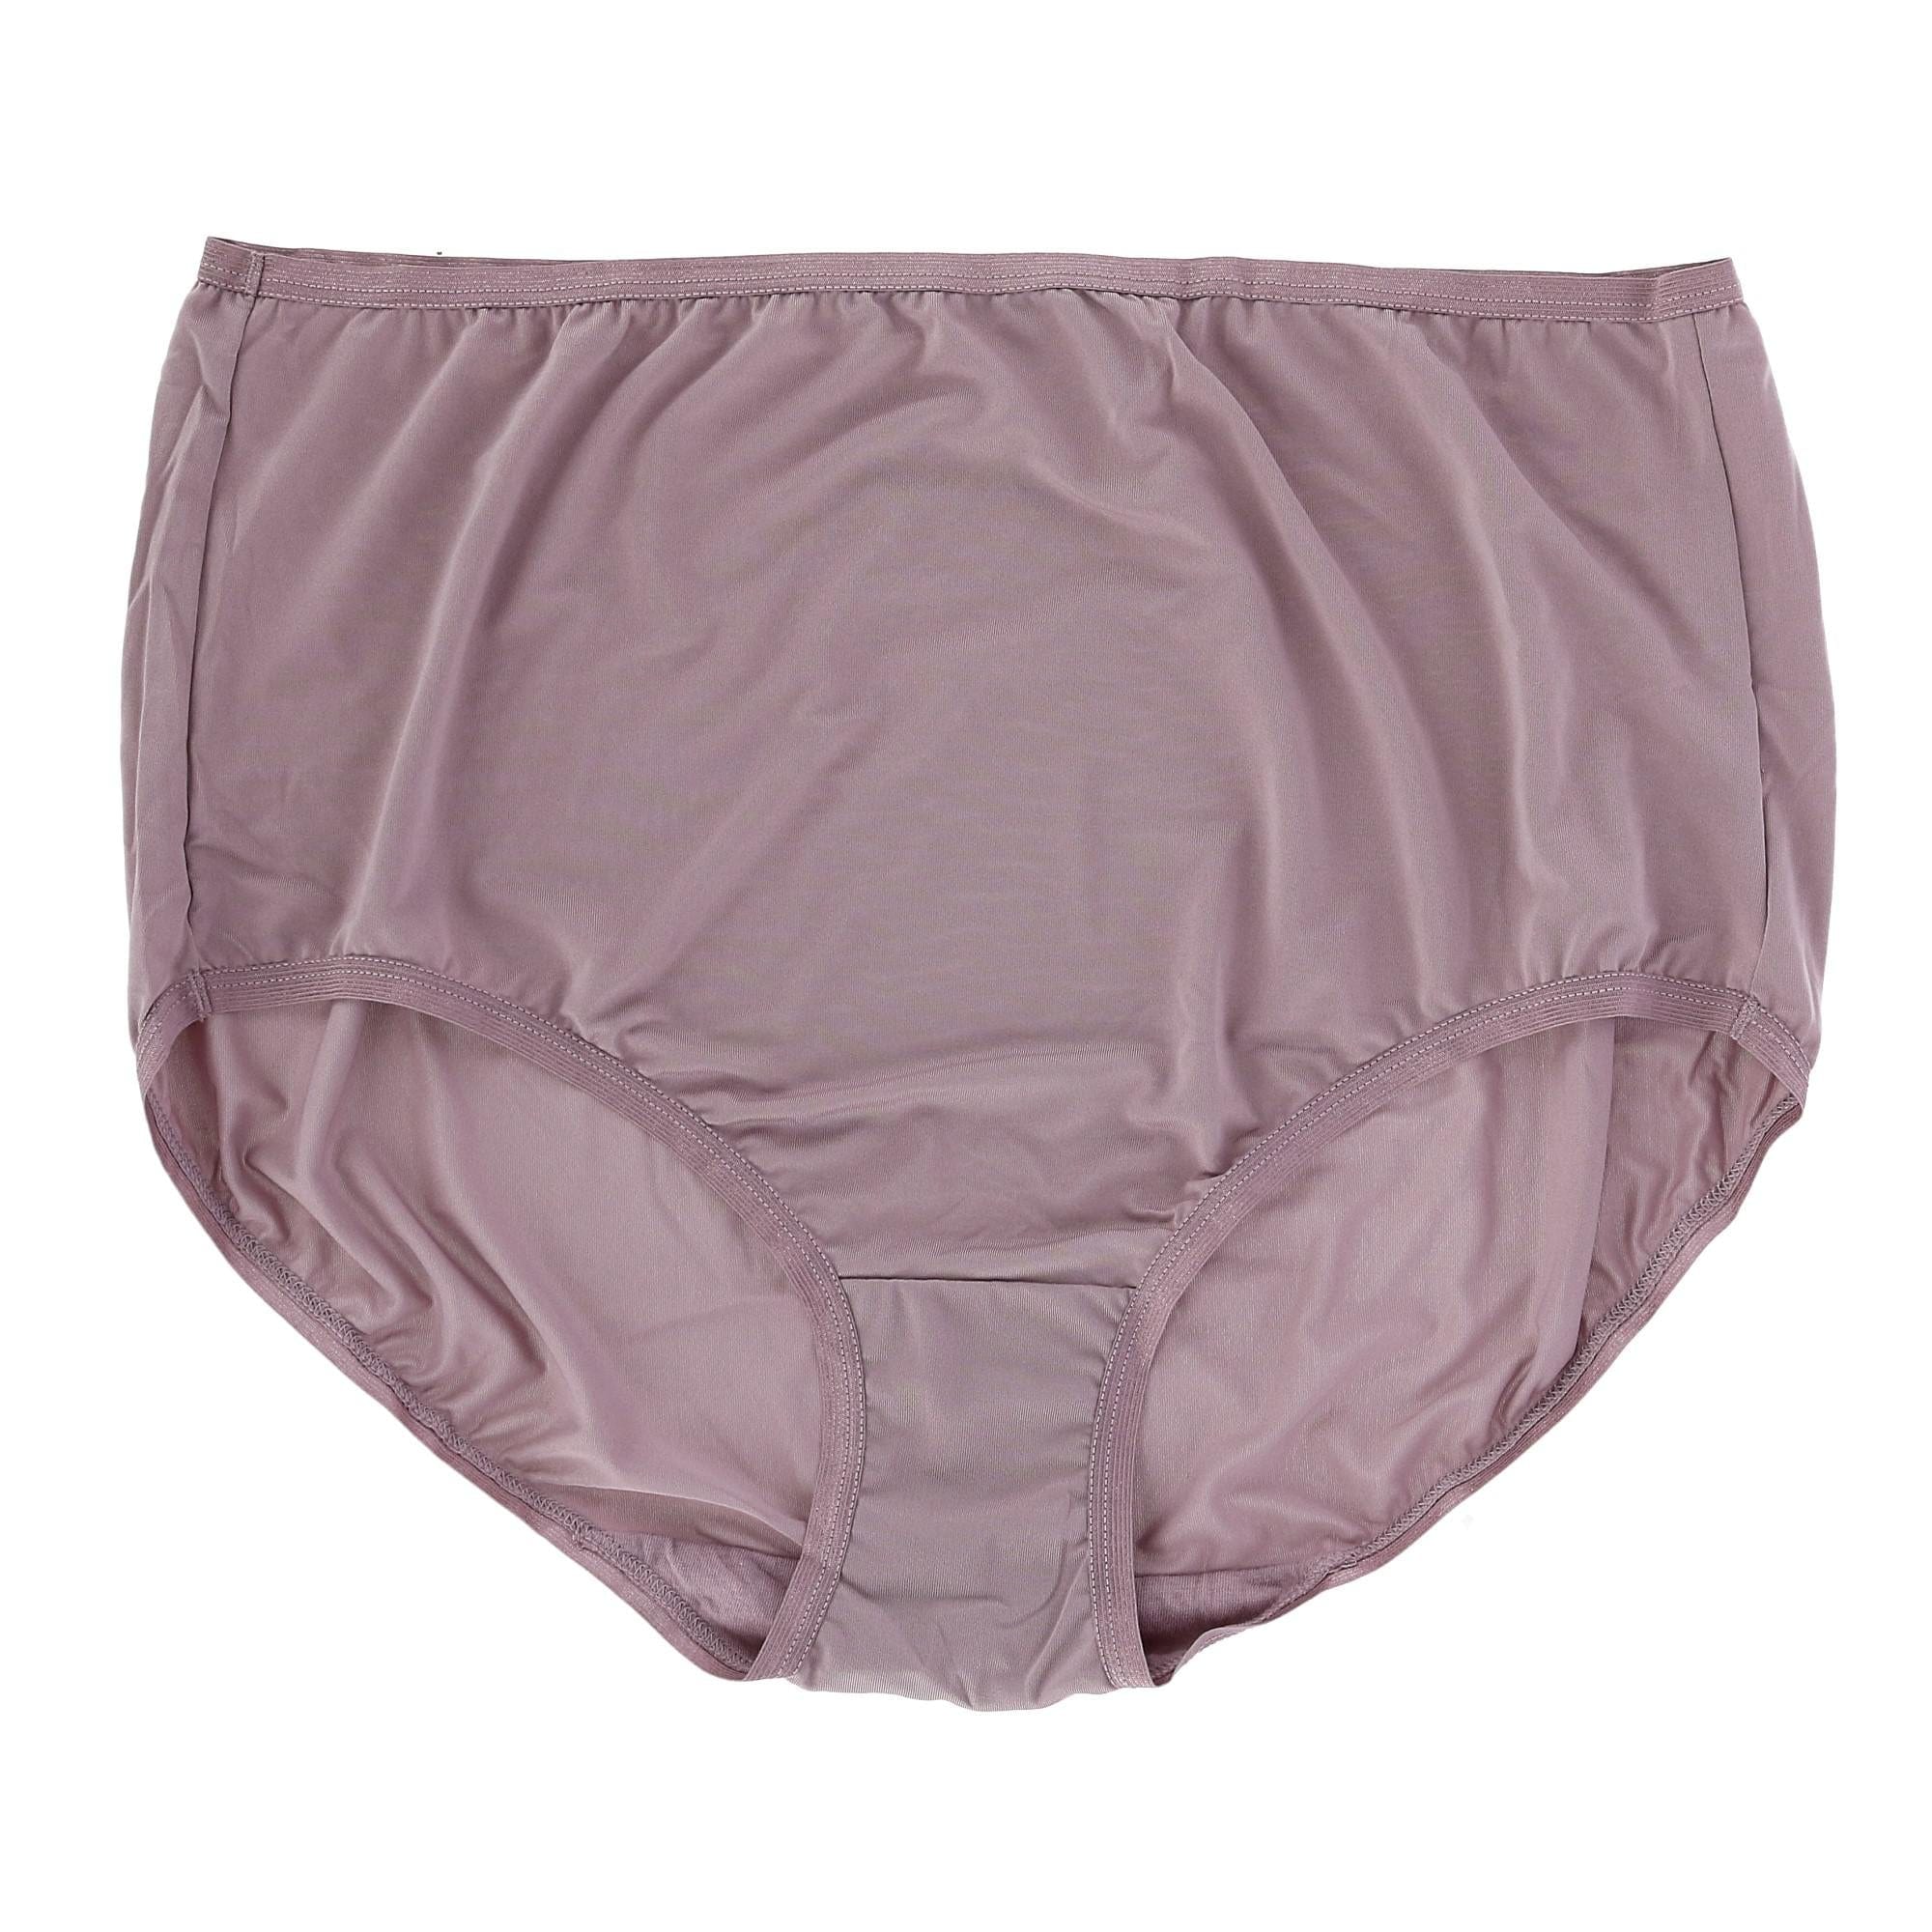 Fruit of the Loom Women's Microfiber Brief Underwear, 12 Pack